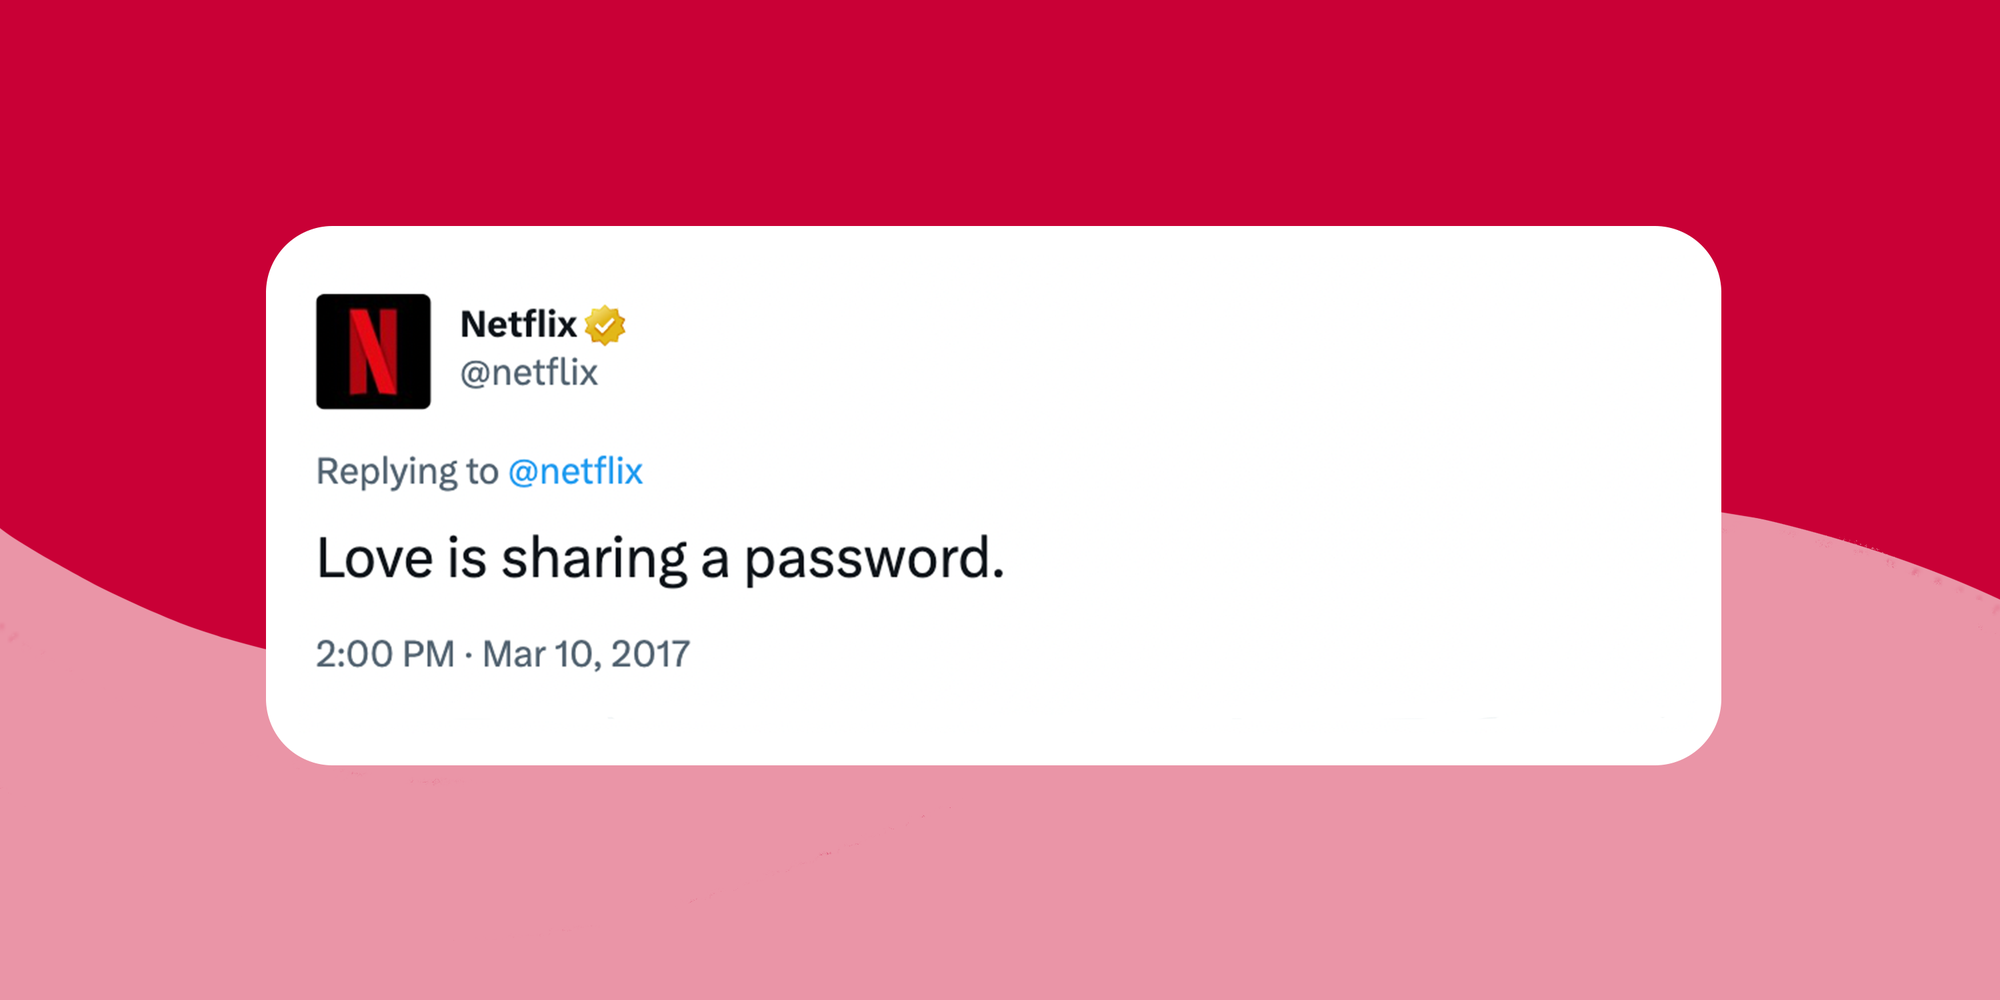 Lượng đăng kí Netflix mới tăng đột biến sau khi cấm chia sẻ mật khẩu, dân mạng đưa lý do hợp lý vô cùng - Ảnh 5.